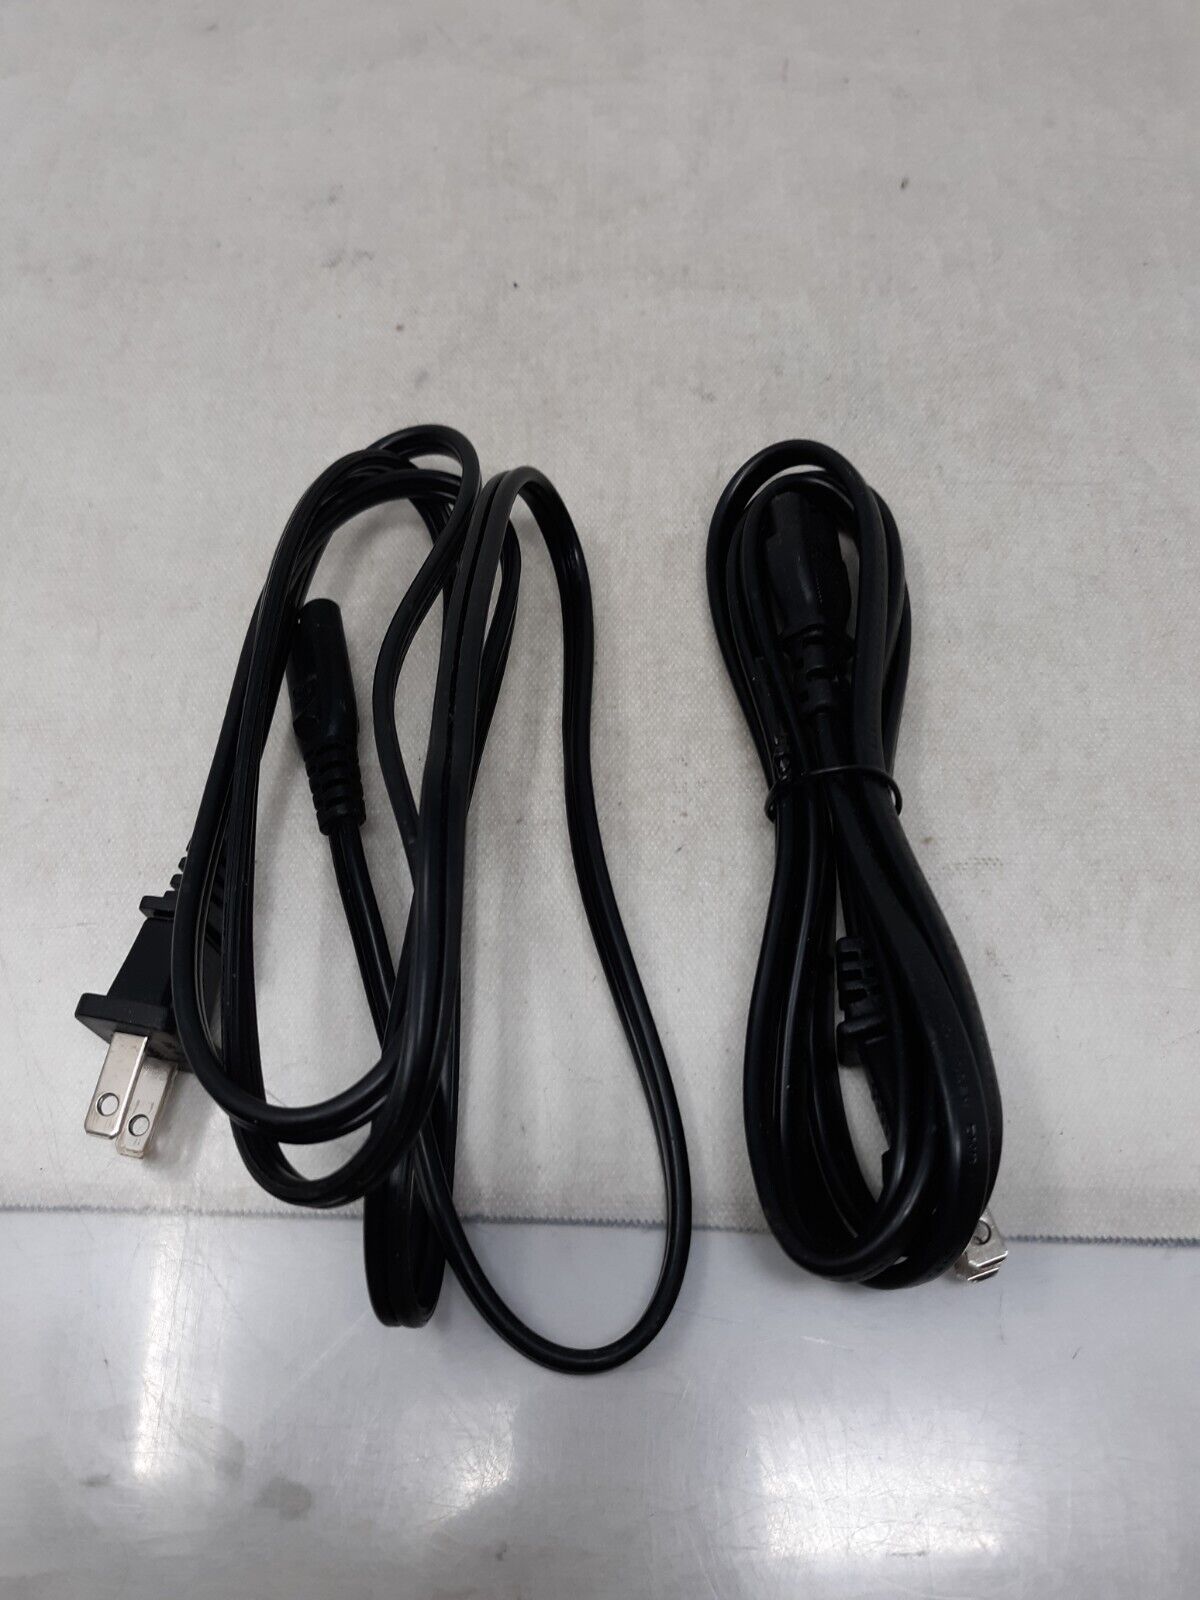 2 Pcs 6FT US 2 Prong Port AC Power Cord Cable Figure 8 Male Plug Slim 18/2 Gauge